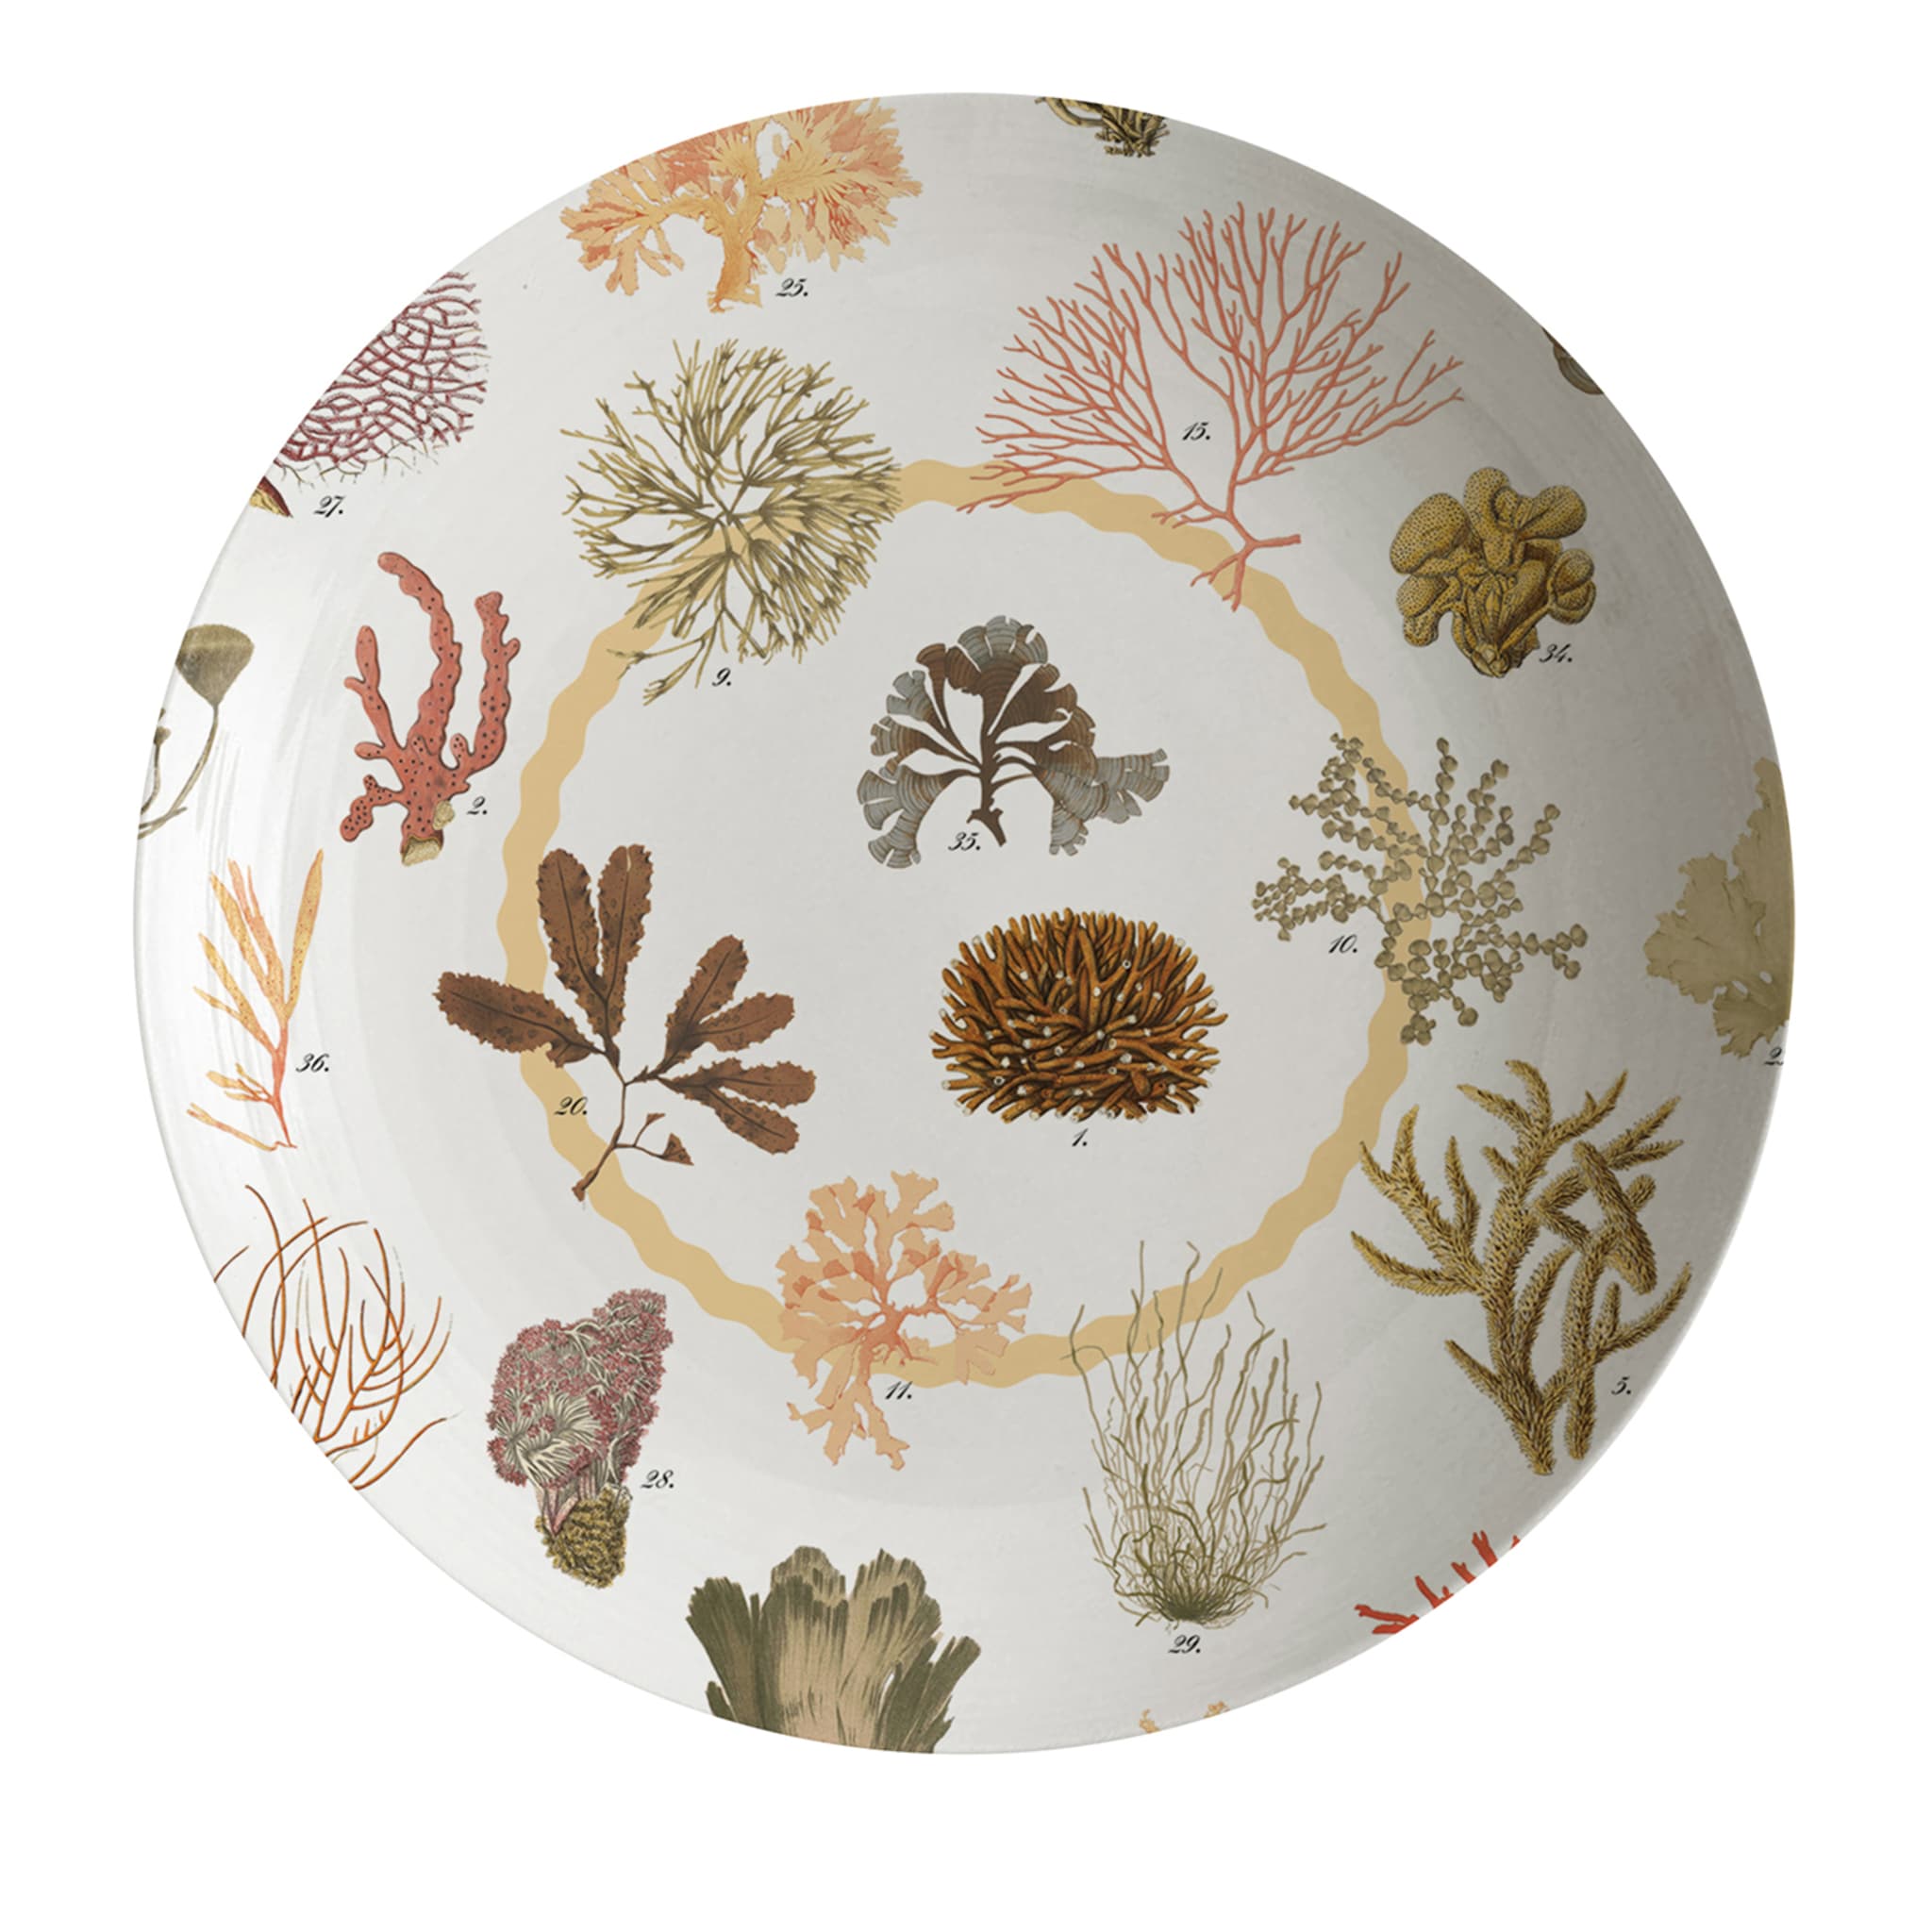 Cabinet De Curiosités Porcelain Soup Plate With Corals - Main view